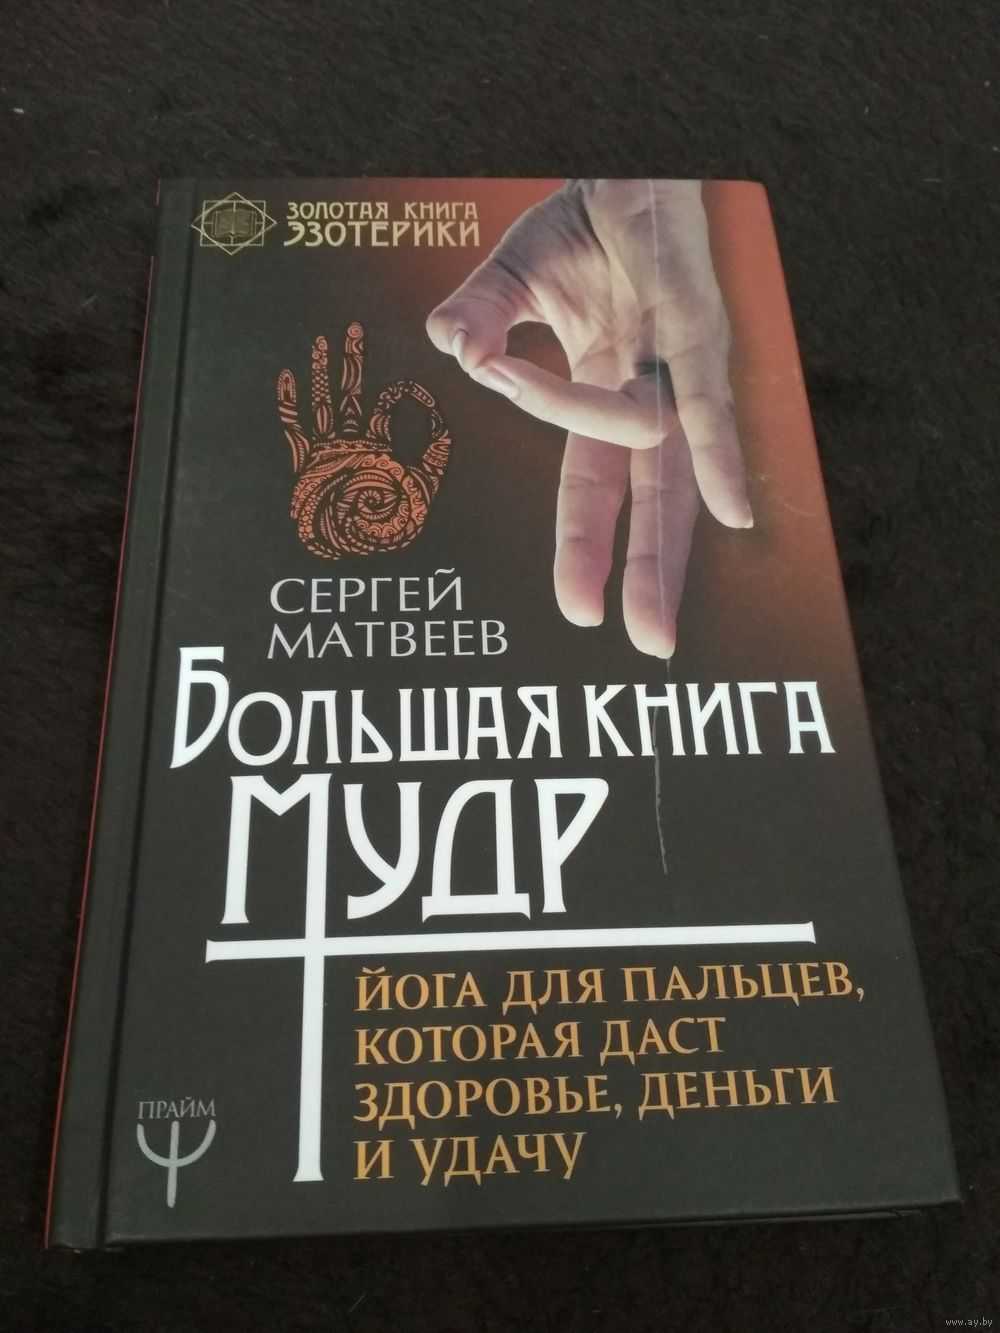 Мудрая книга ответов. Мудры йога для пальцев книга. Мудрая книга. Большая книга мудр.